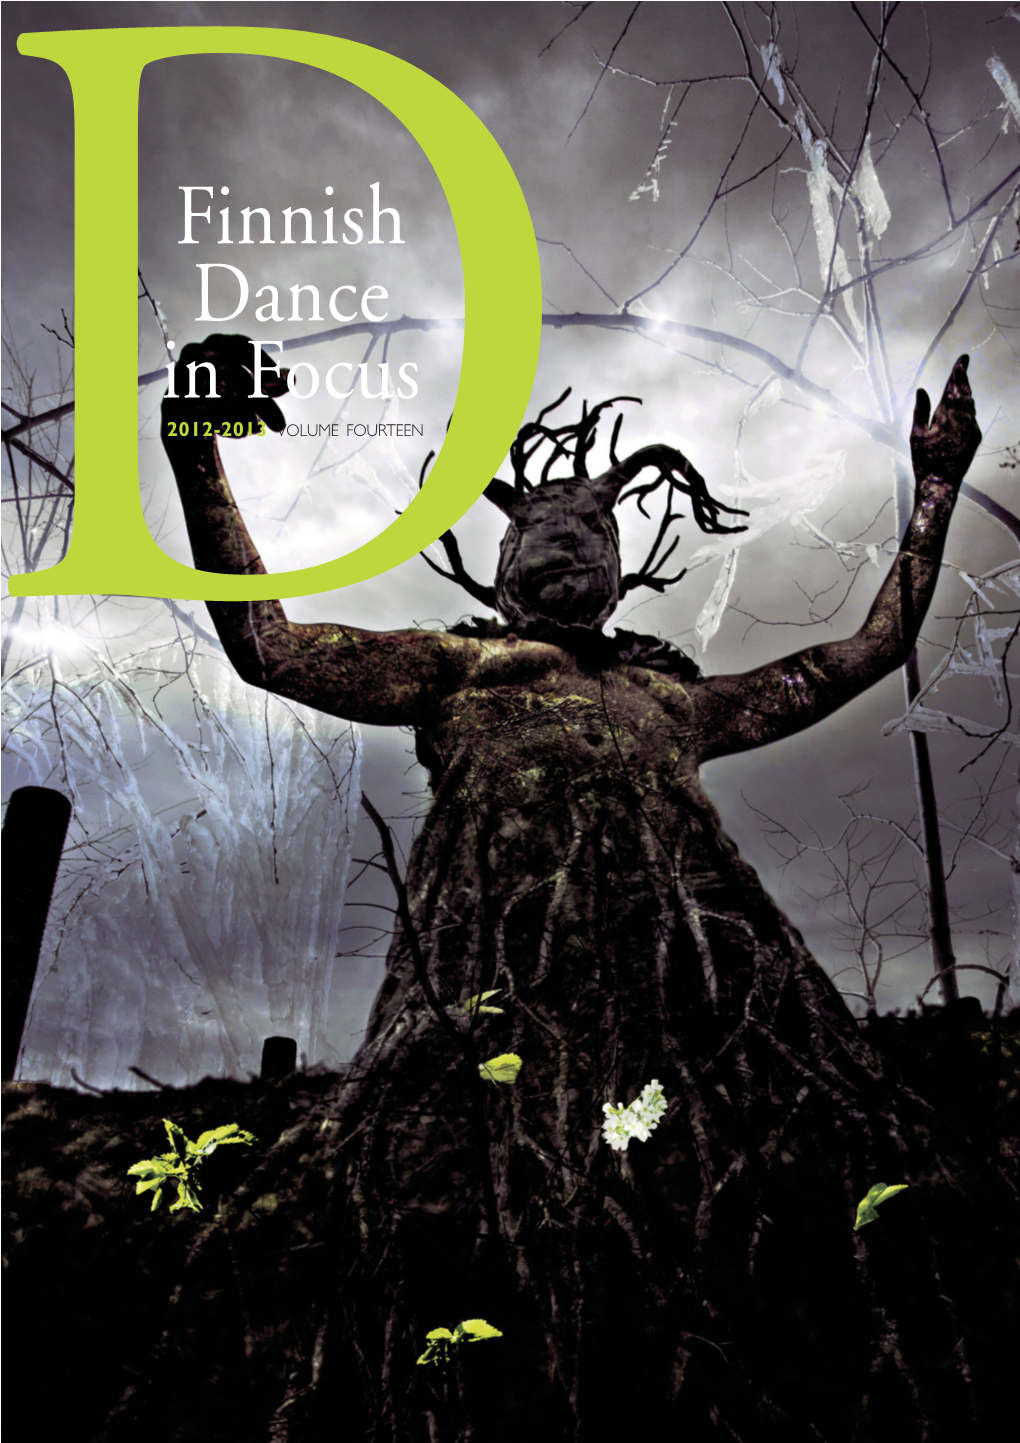 Finnish Dance in Focus D2012-2013 VOLUME FOURTEEN